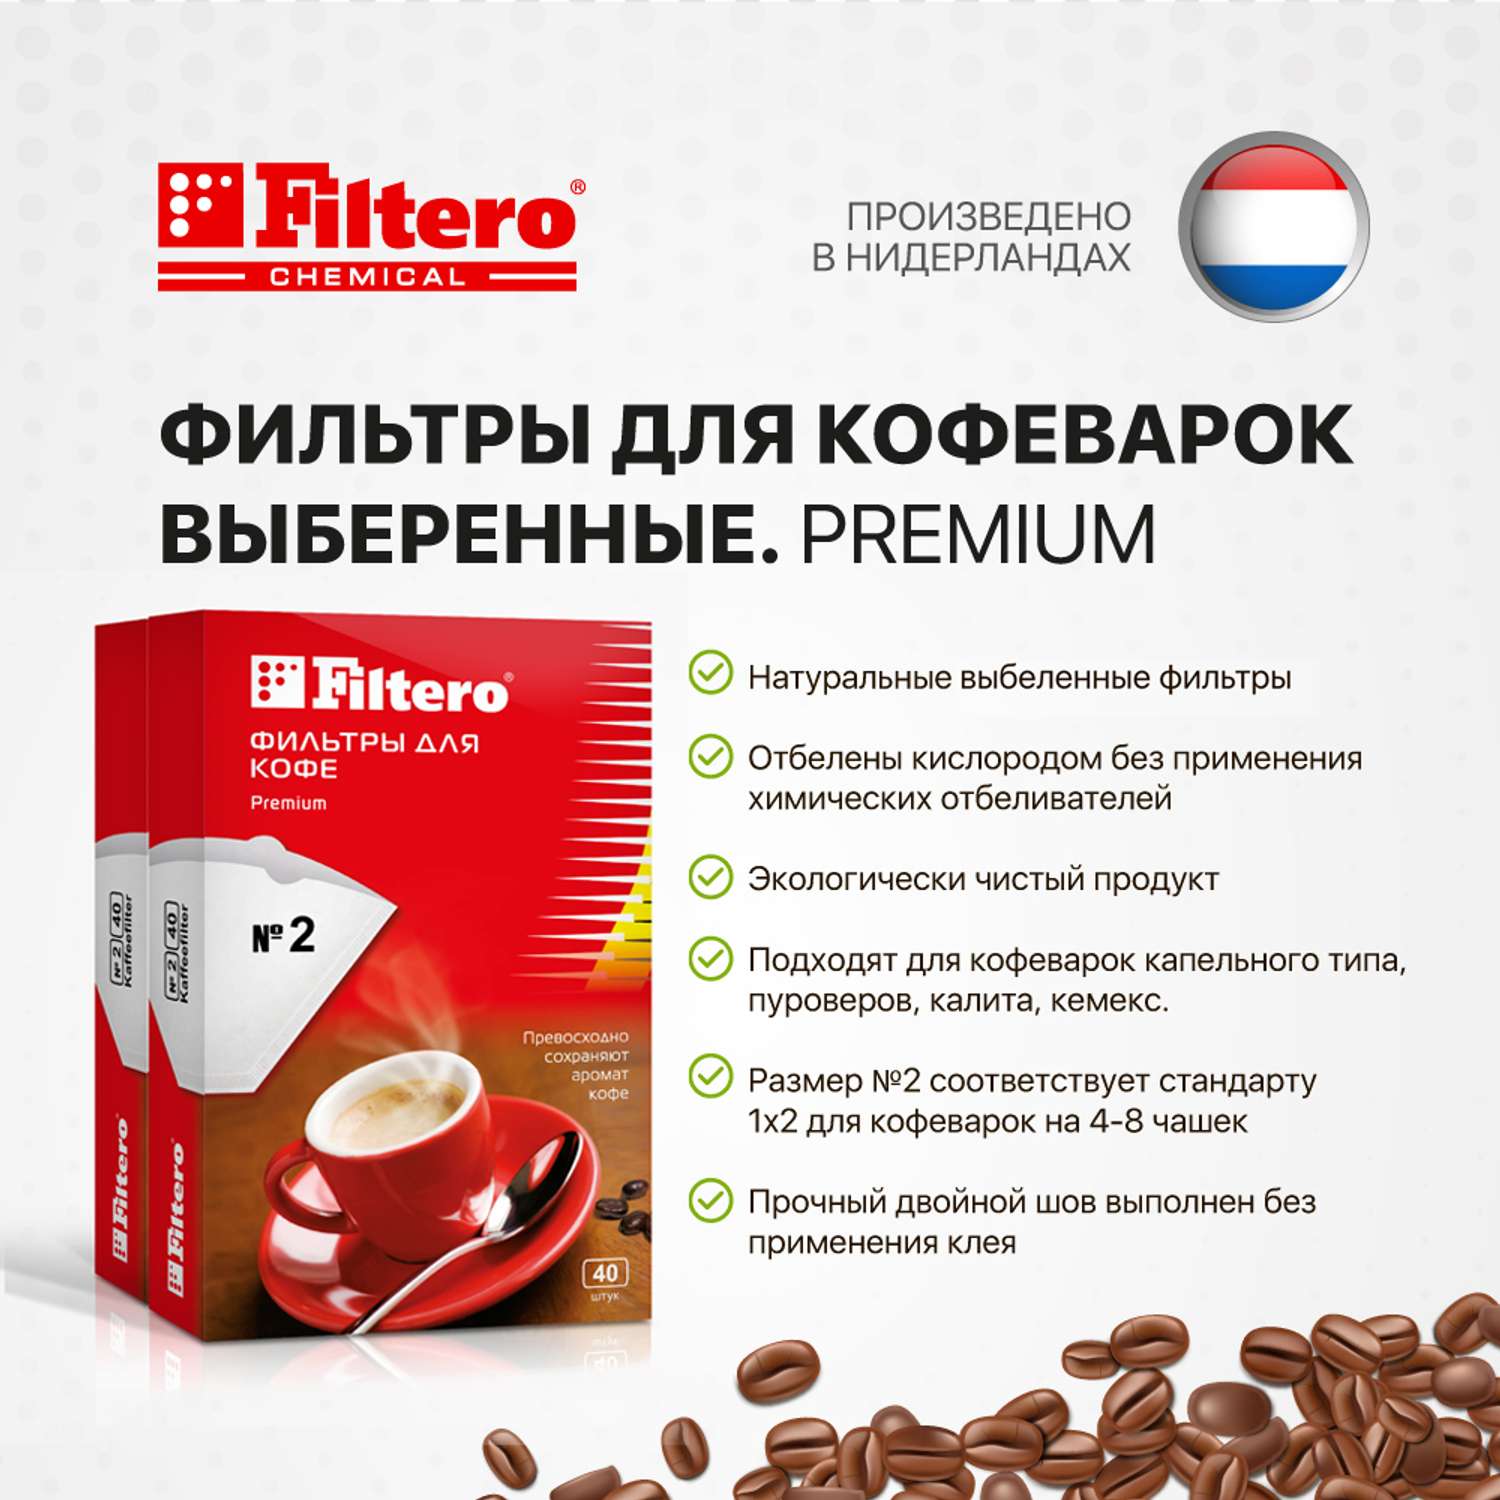 Комплект фильтров Filtero для кофеварки №2/80шт белые Premium - фото 2